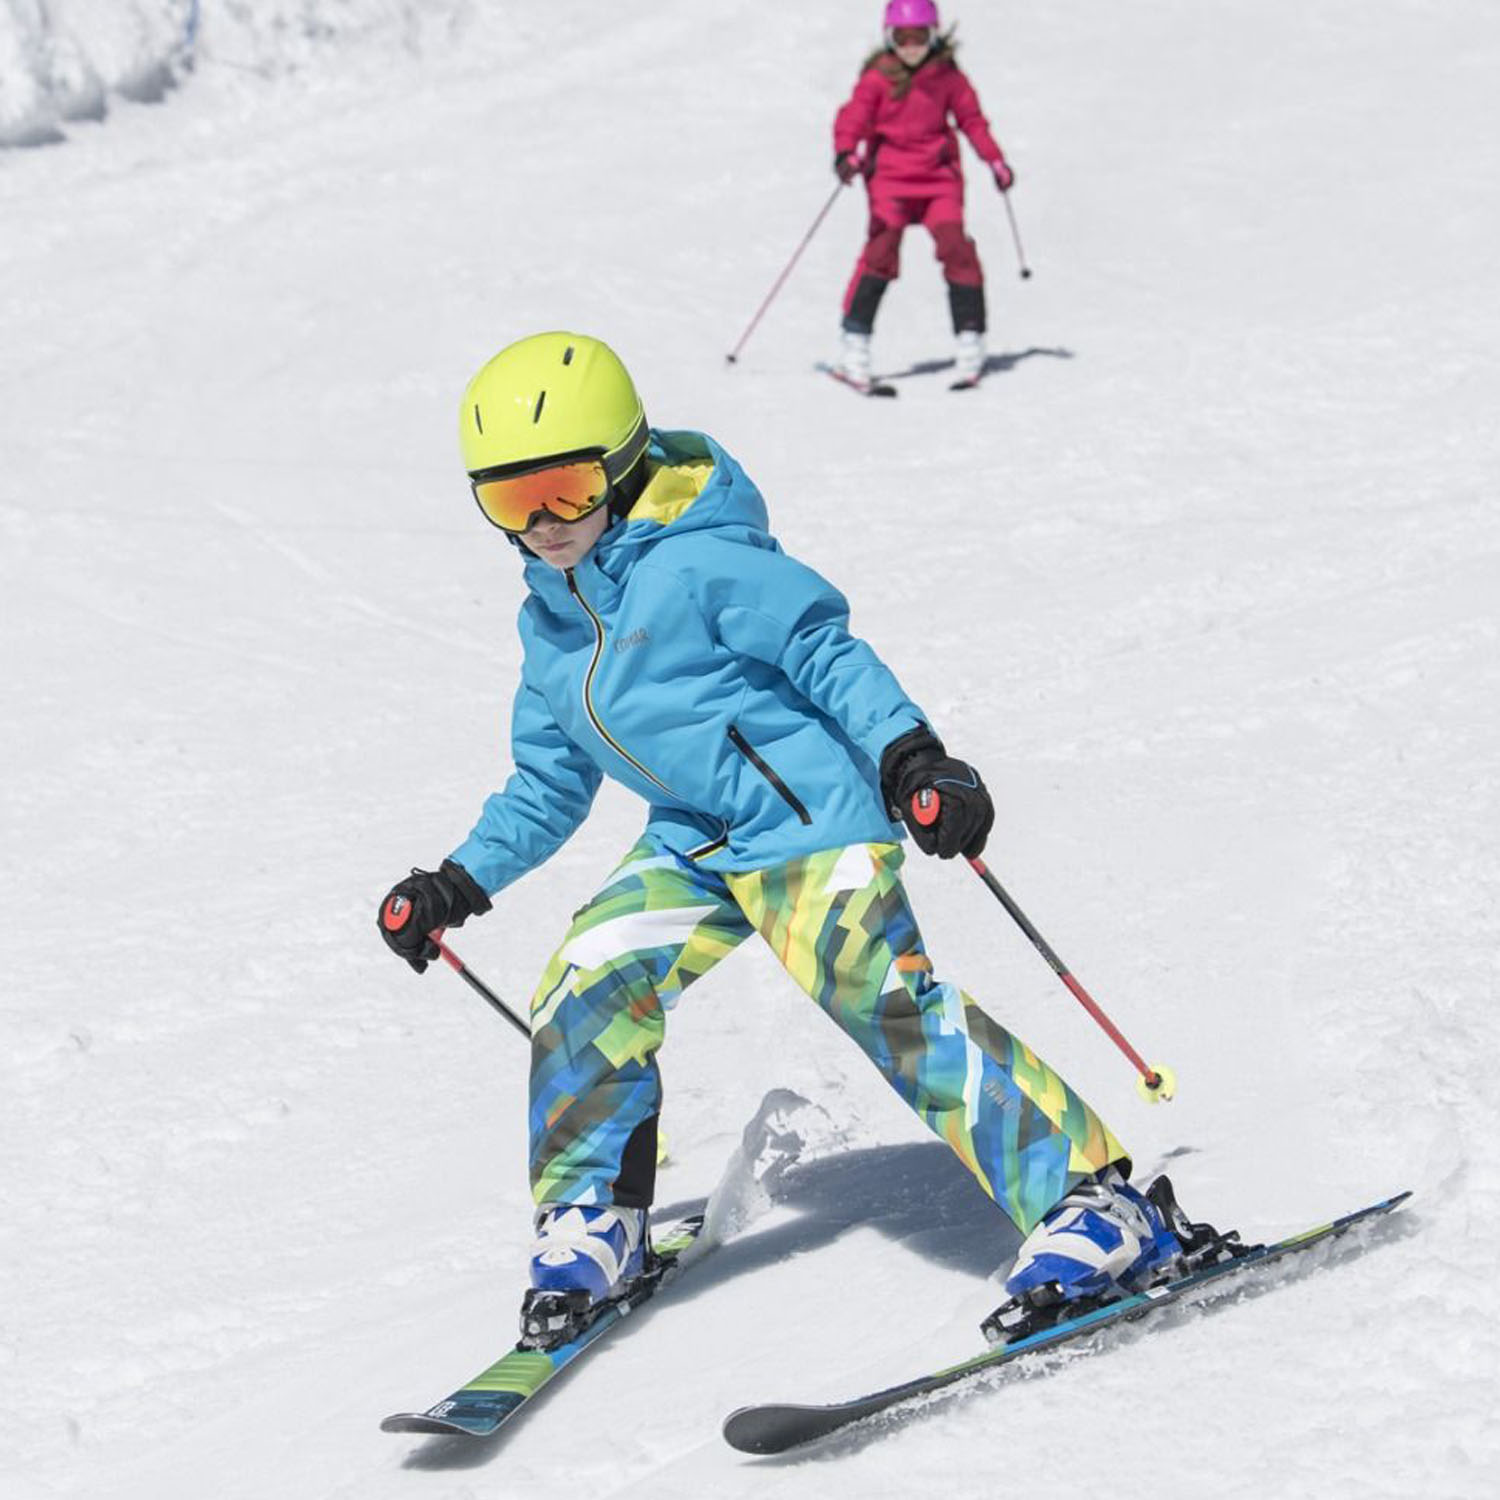 Горные лыжи с креплениями ELAN Maxx QS 70-90 + EL 4.5 Shift